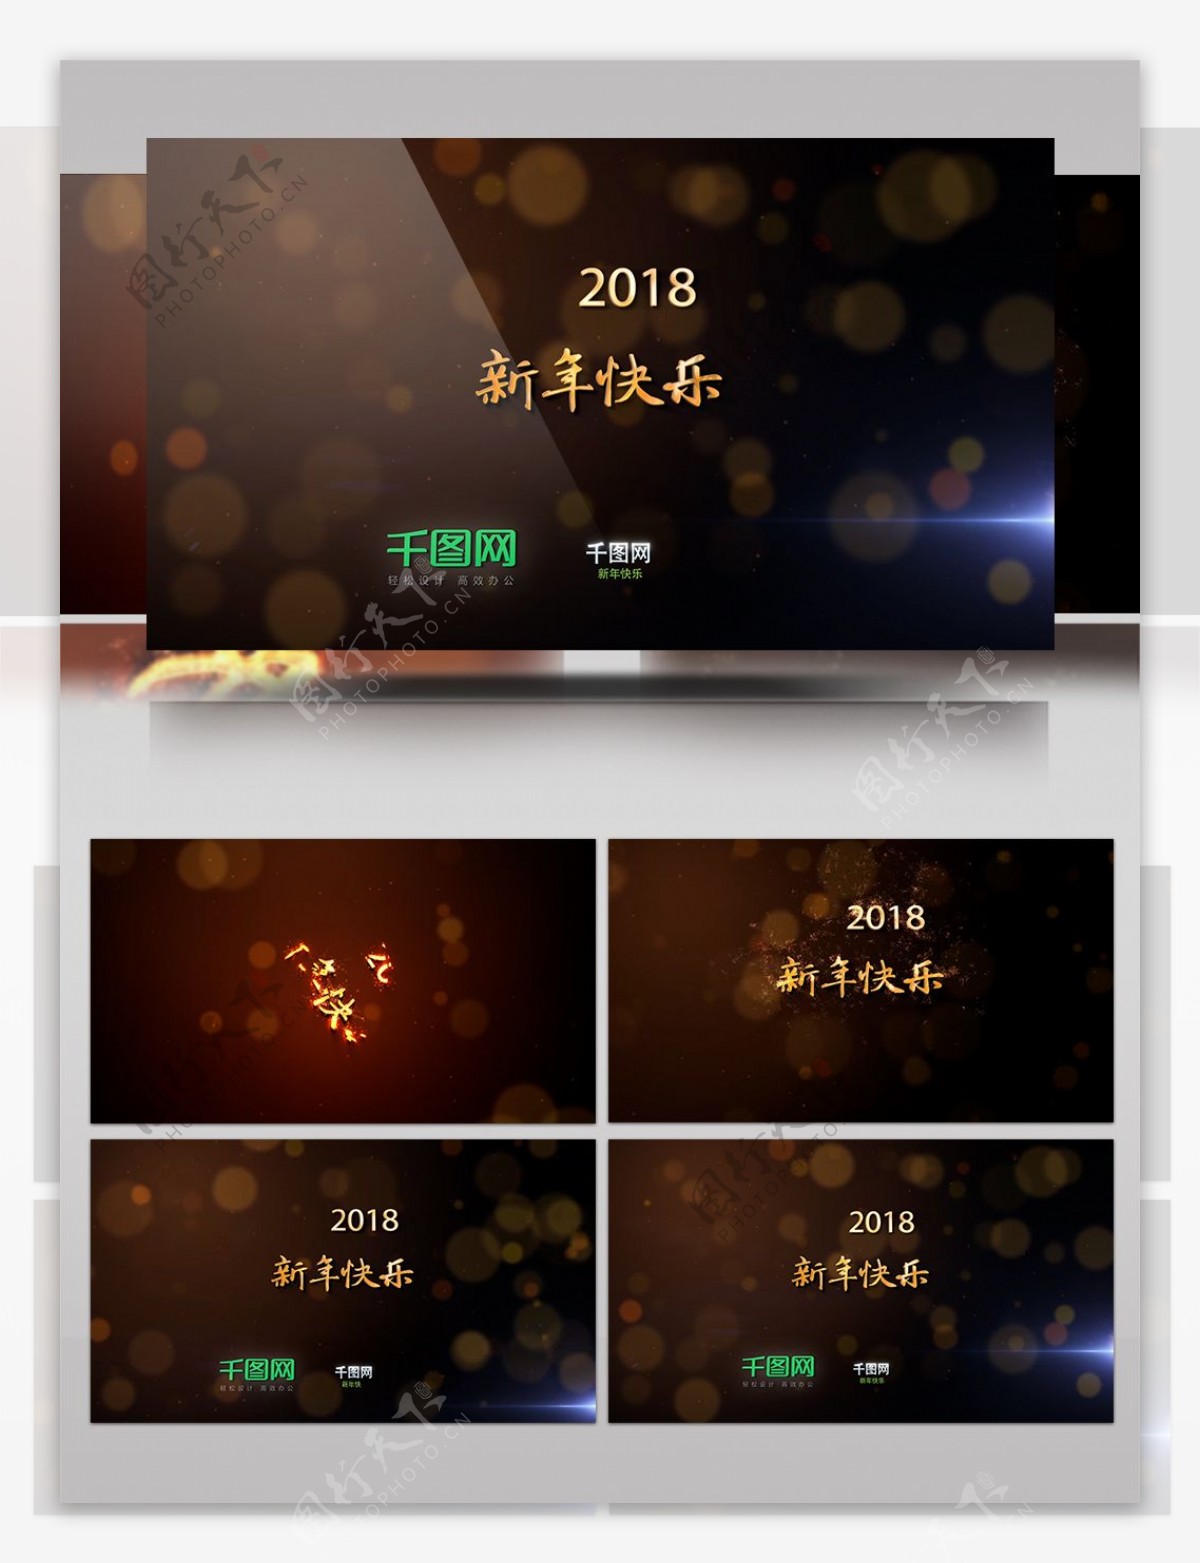 新年祝福粒子生成文字Logo动画